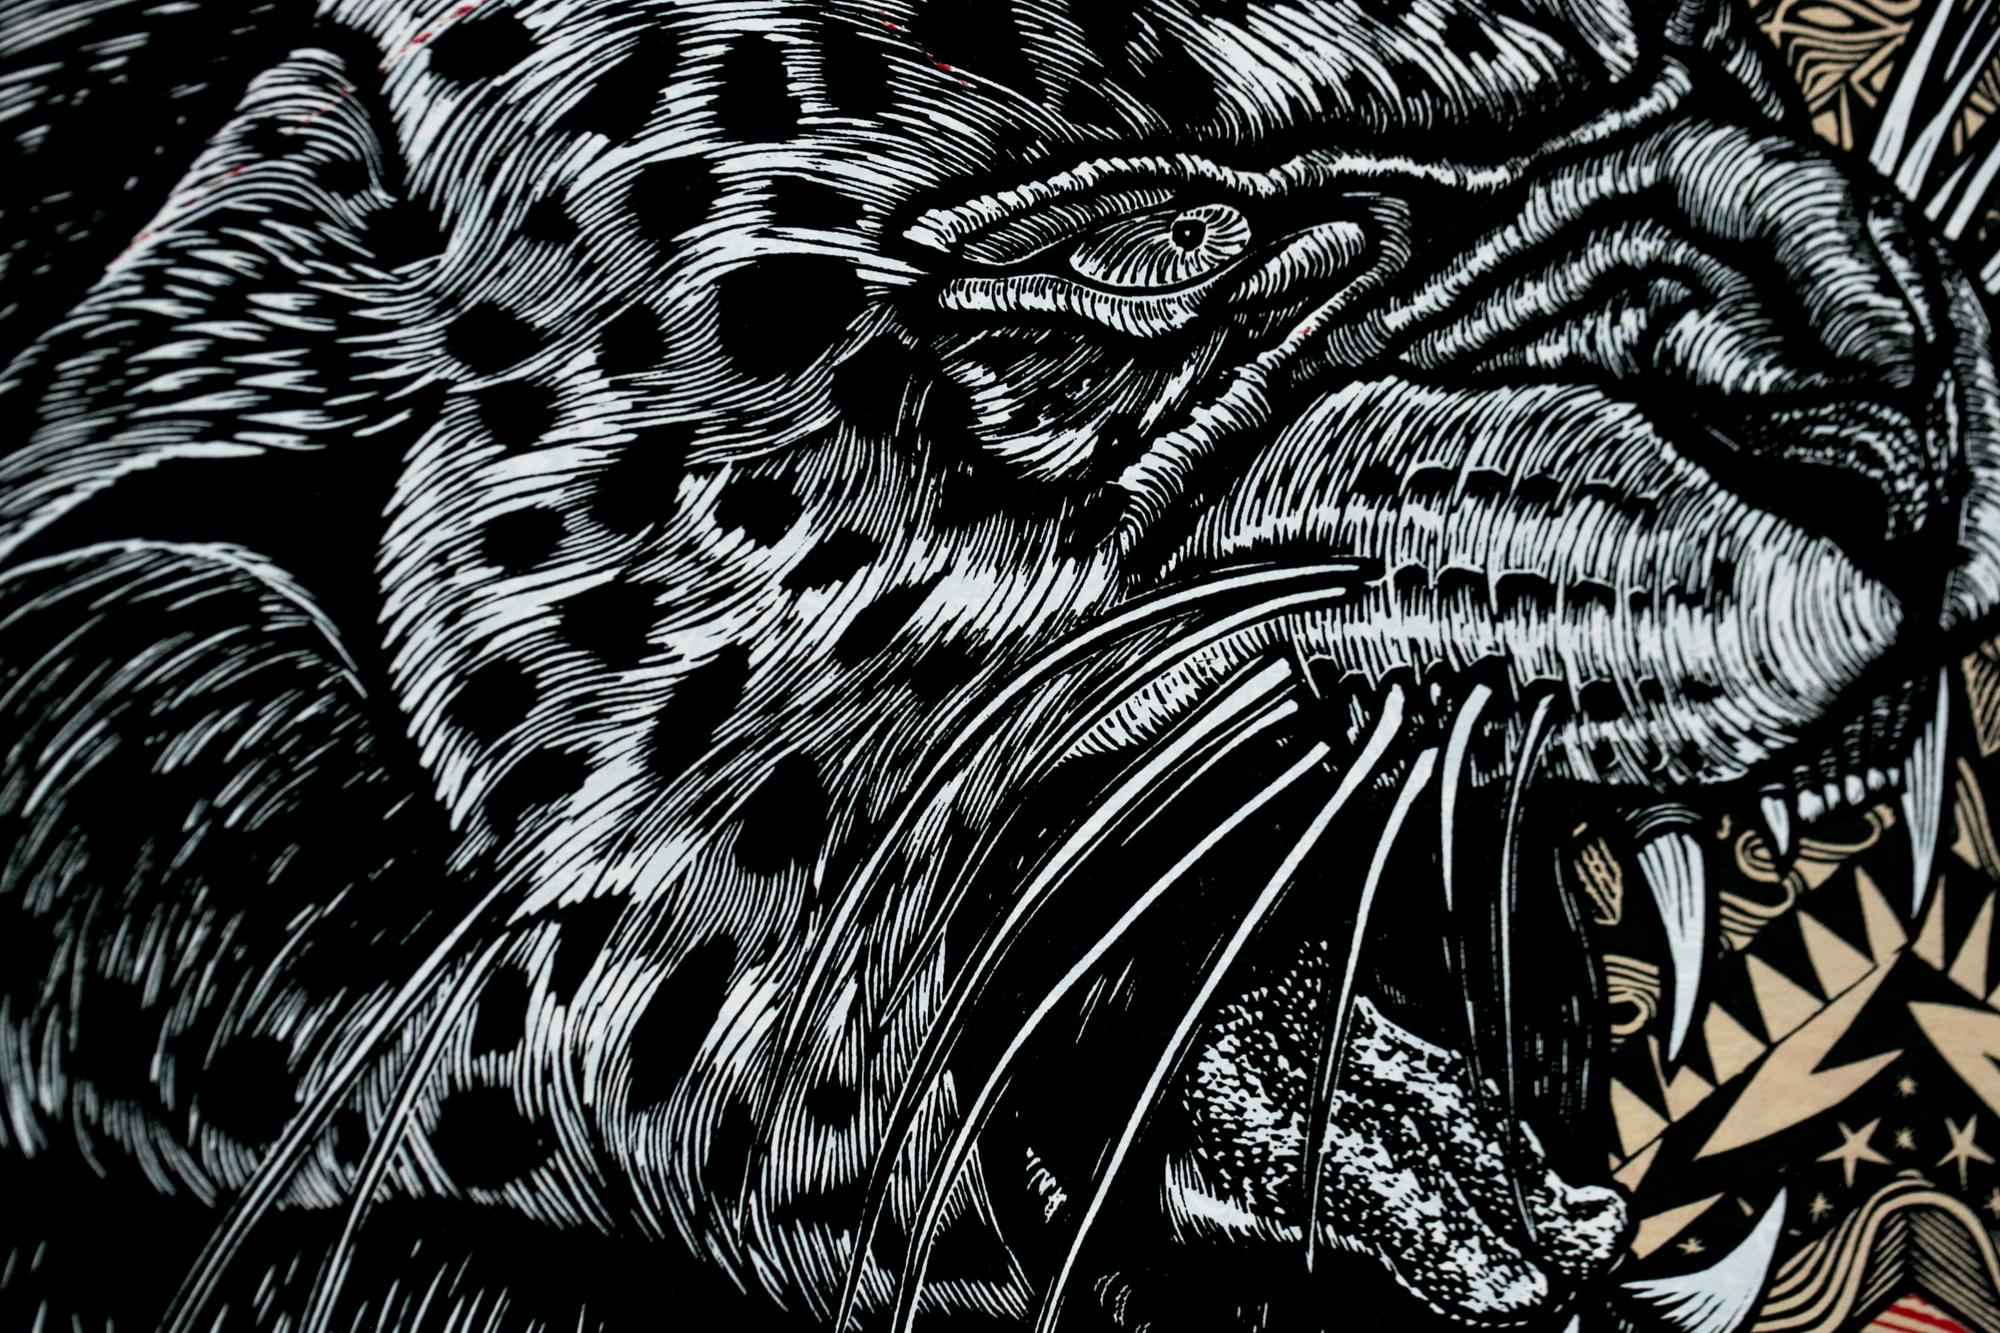 Le léopard de neige cinétique II - Contemporain Print par Dennis McNett